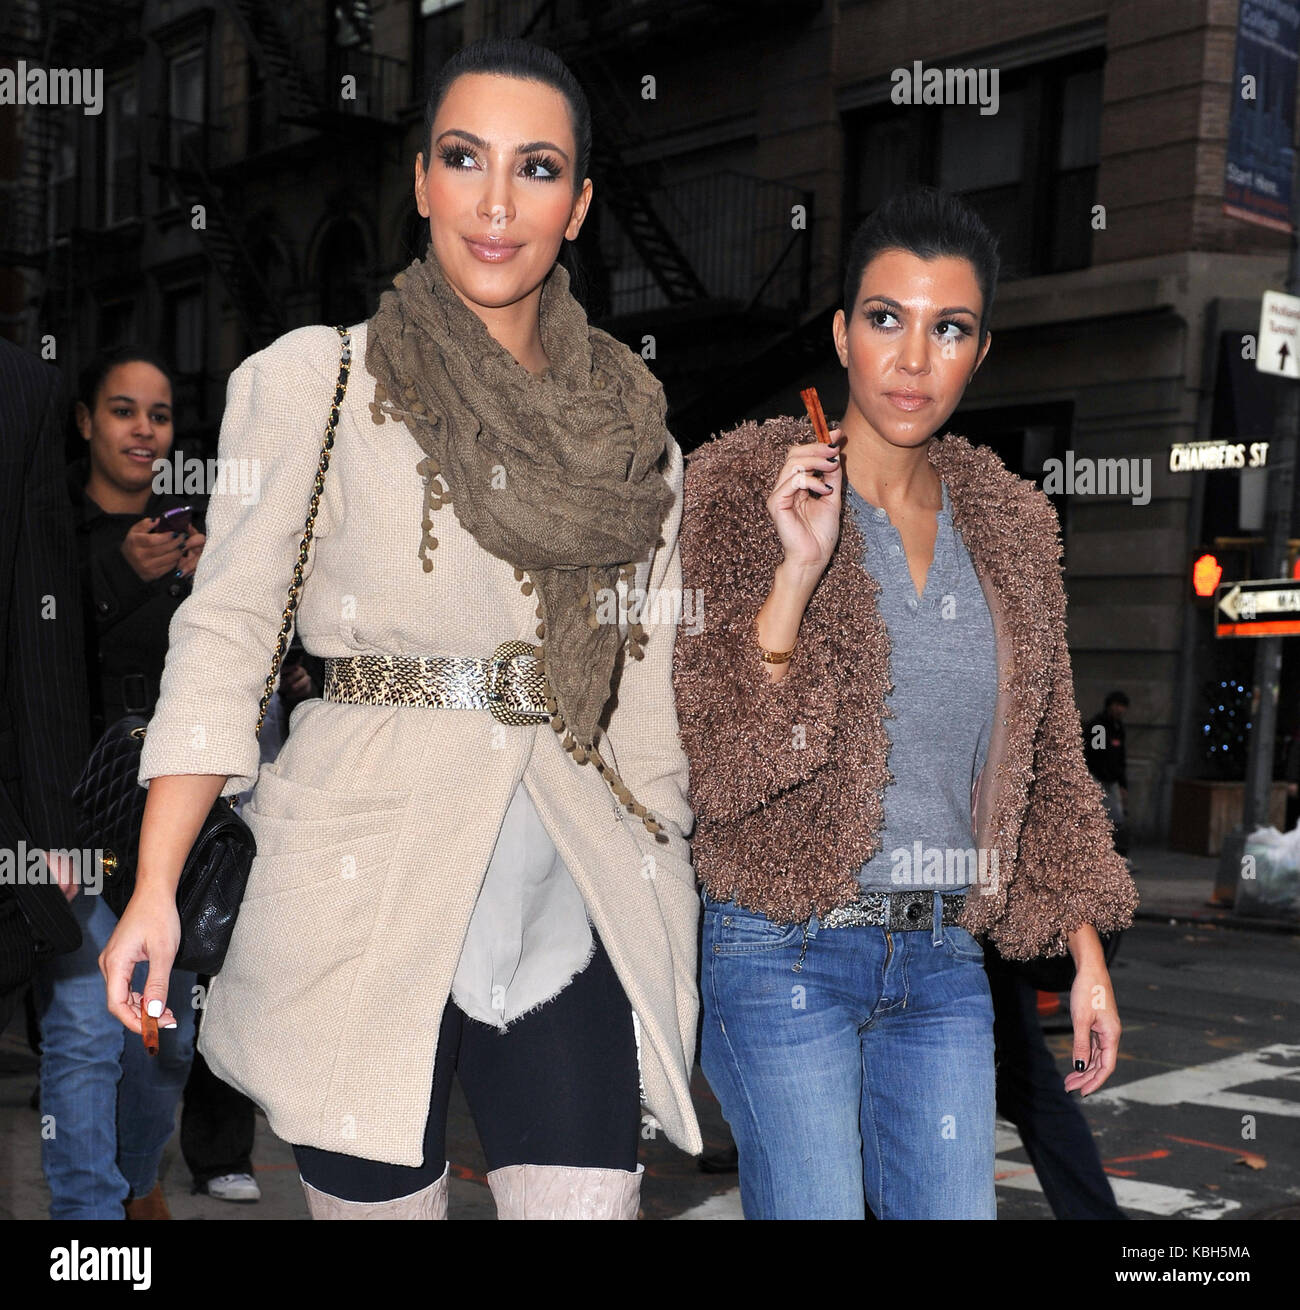 NEW YORK - November 05: Fernsehen Persönlichkeiten Kim Kardashian und Schwester Kourtney Kardashian verlassen ihre New York Hotel und zu Fuß zu einem lokalen Cafe, wo auch ein wenig heißem Apfelwein und einer Zimtstange genossen. Auf einen lebhaften NY Nachmittag. Beide Mädchen schien Orale Fixierungen zu haben, wie sie Beide vortäuschte, die Zimtstange zu rauchen, da es eine Zigarre oder stumpf waren, und wenn sie das nicht tun, Sie saugen an den Stöcken und ihre Finger waren. Am 5. November 2010 in New York City. Personen: Kim Kardashian Kourtney Kardashian Getriebe Ref: MNC 15 Credit: Hoo-Me.com/MediaPunch Stockfoto